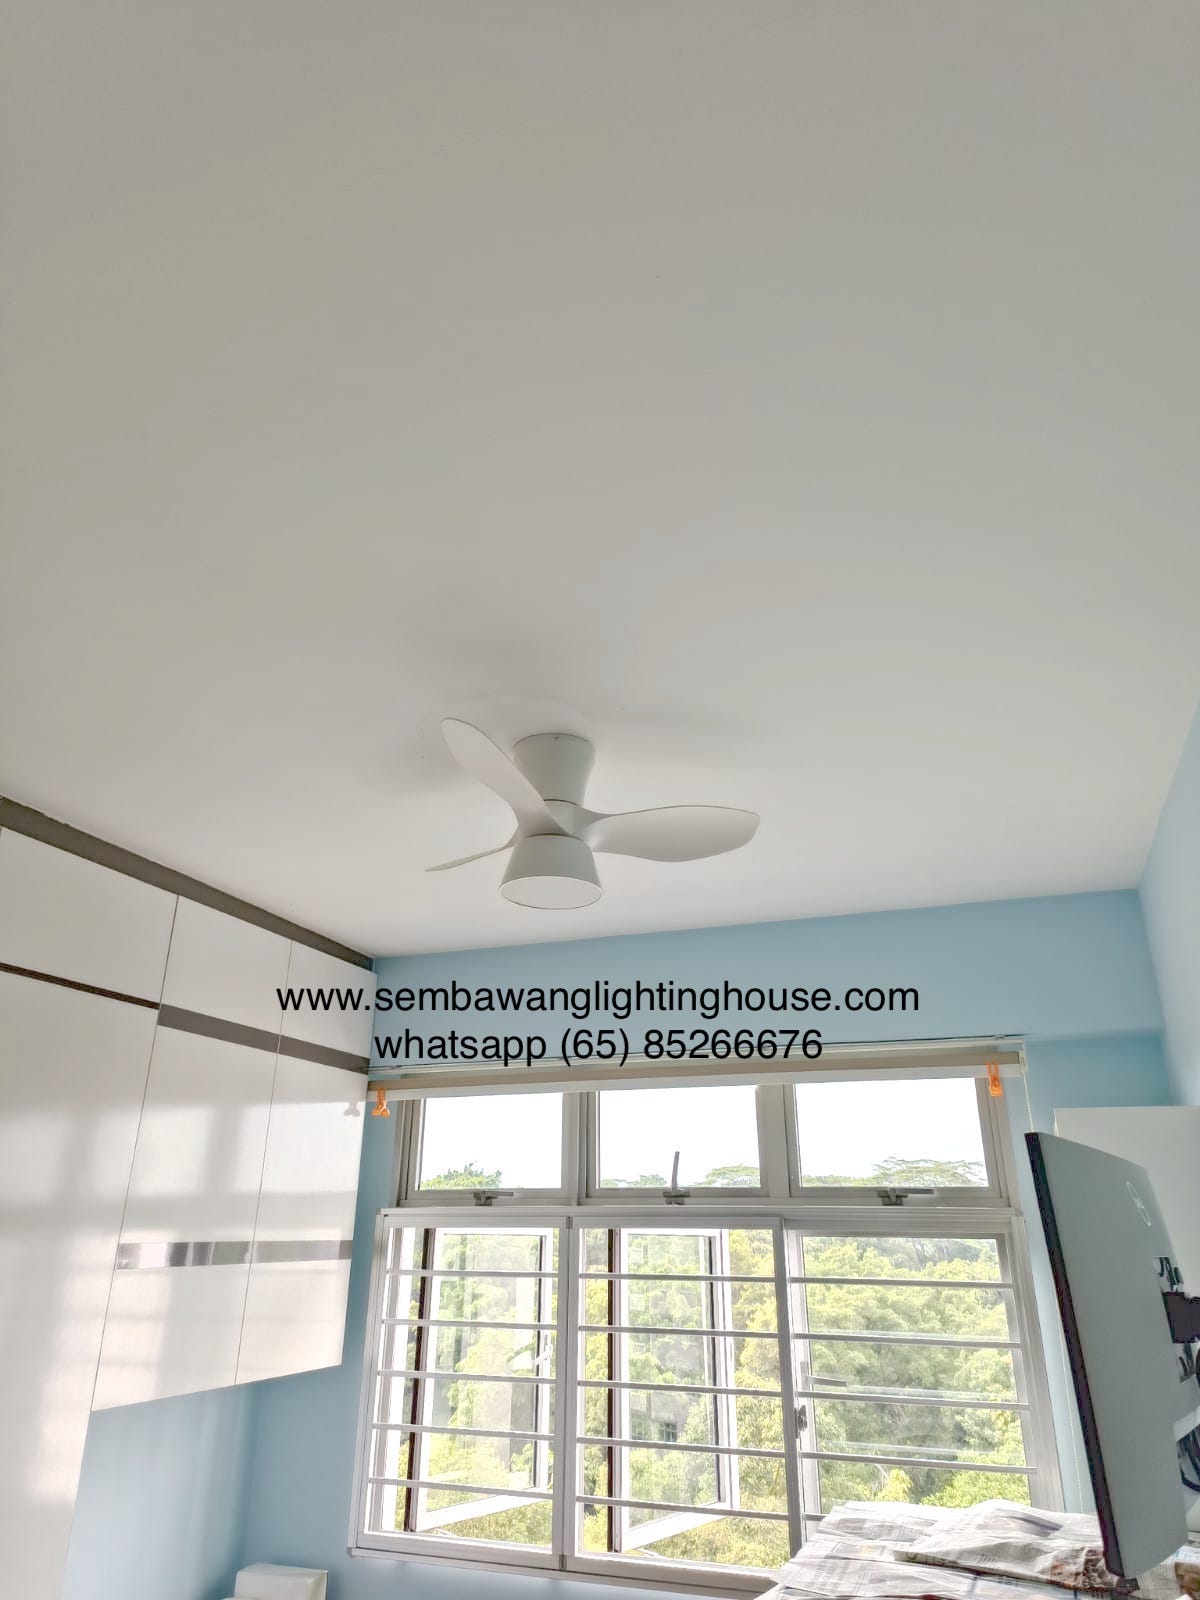 allbreeze-hugger-ceiling-fan-32-inch-white-sembawang-lighting-house-02.jpg